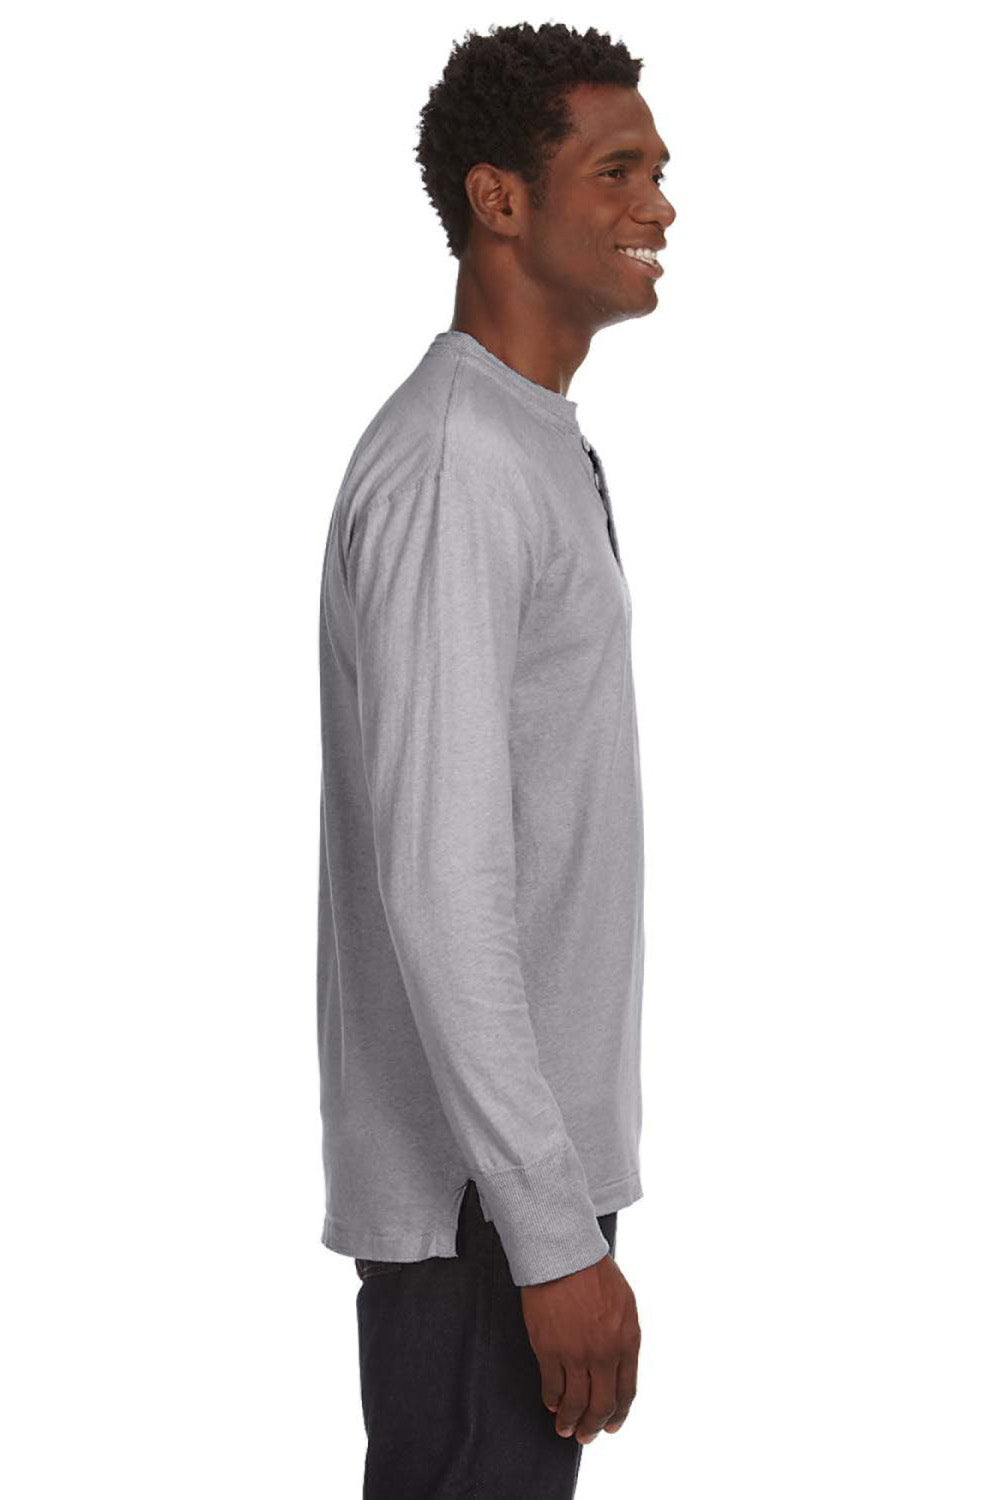 J America JA8244 Mens Vintage Brushed Jersey Long Sleeve Henley T-Shirt Oxford Grey Side